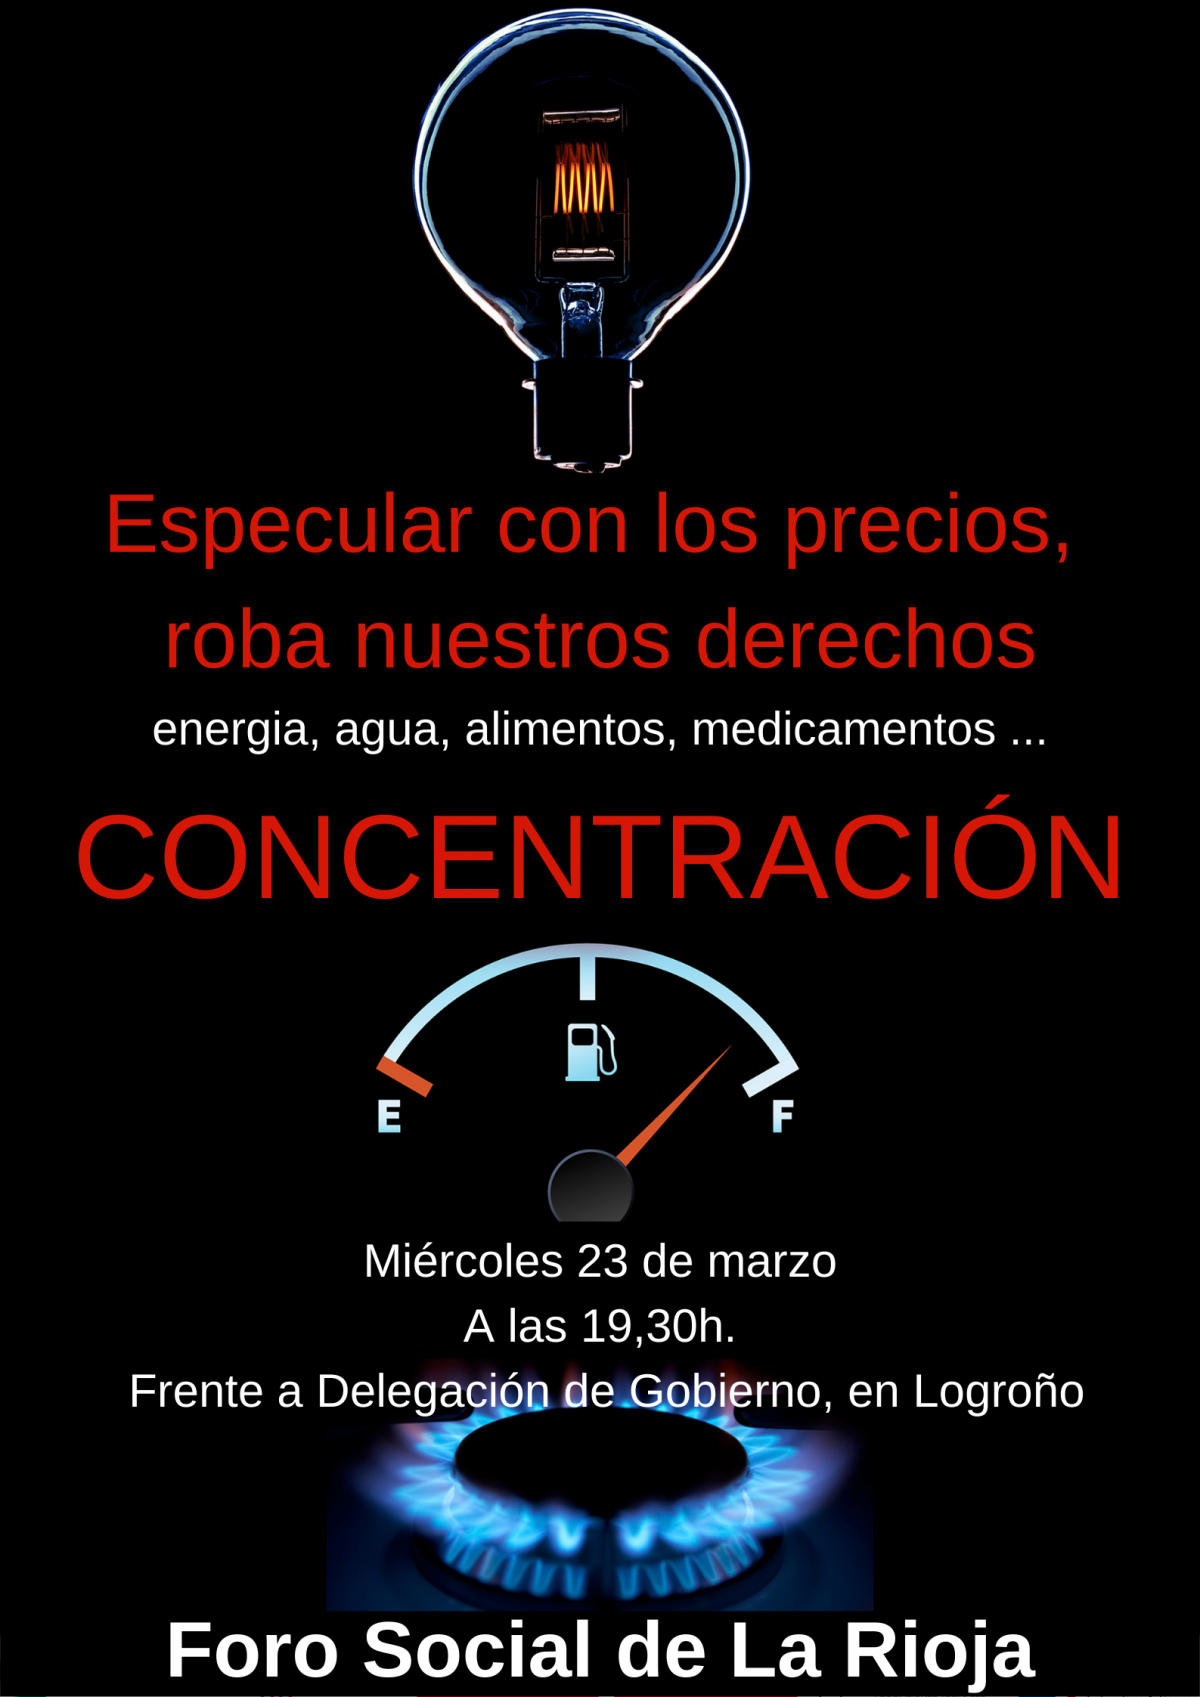 Concentración miércoles 23 a las 19:30 frente a Delegación de gobierno, en Logroño. Con el Foro Social de La Rioja